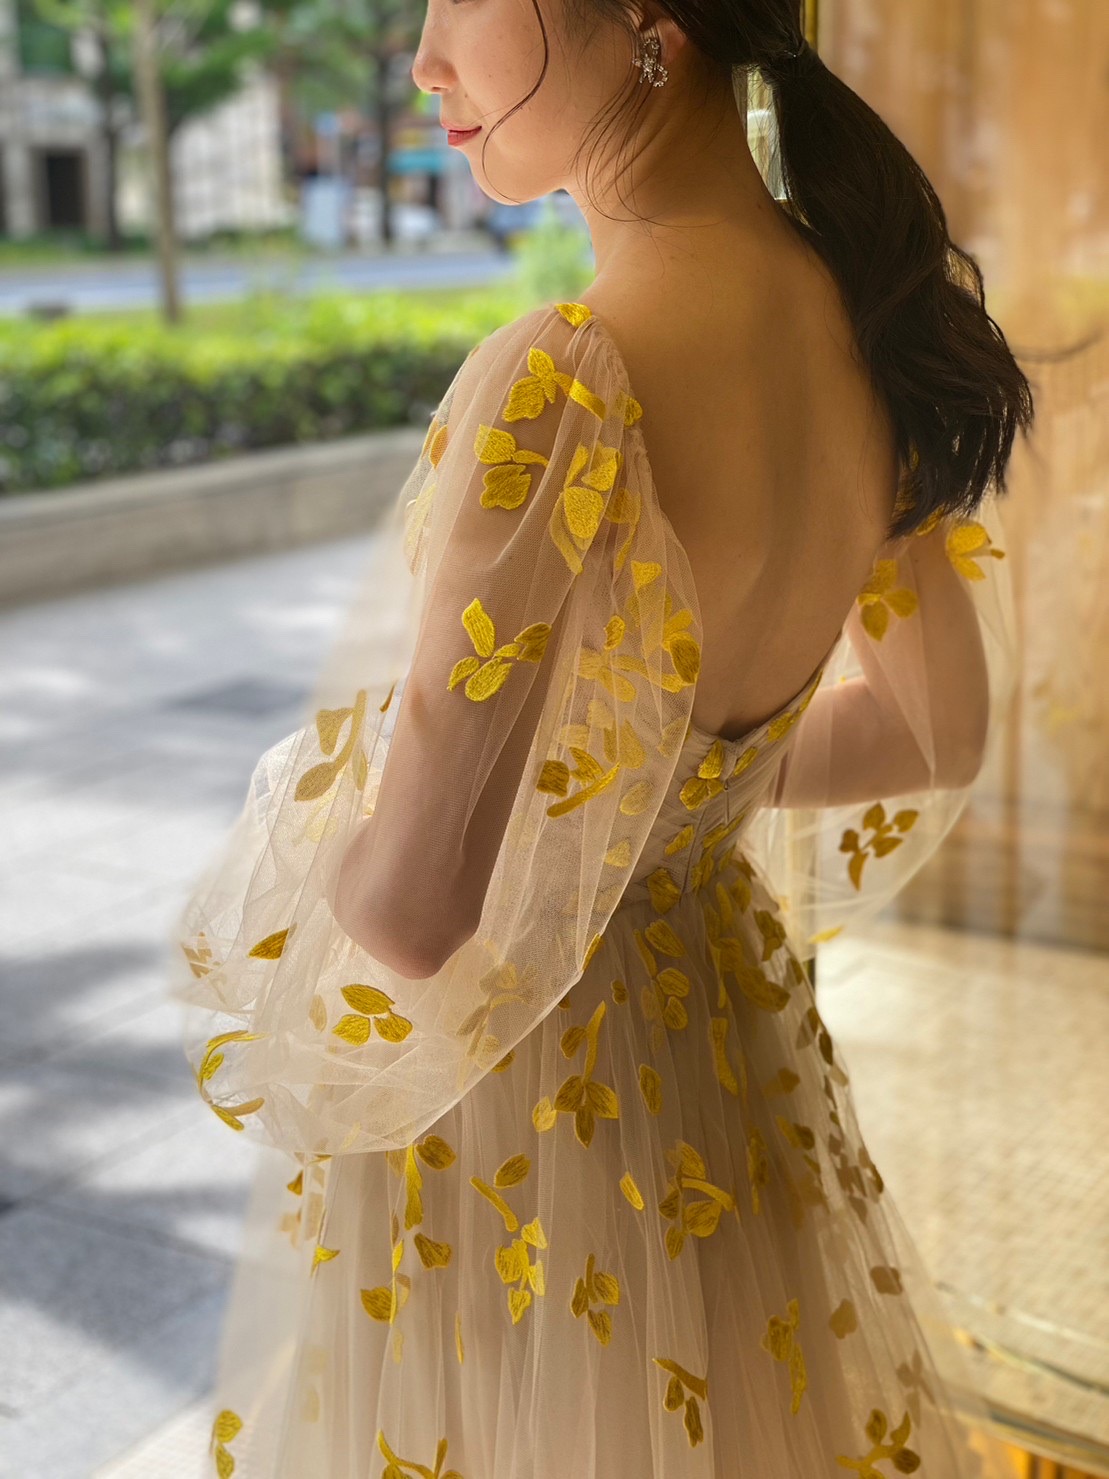 モニークルイリエのロングスリーブのドレスに合わせるローポニーでゆるくまとめた抜け感のあるコーディネート